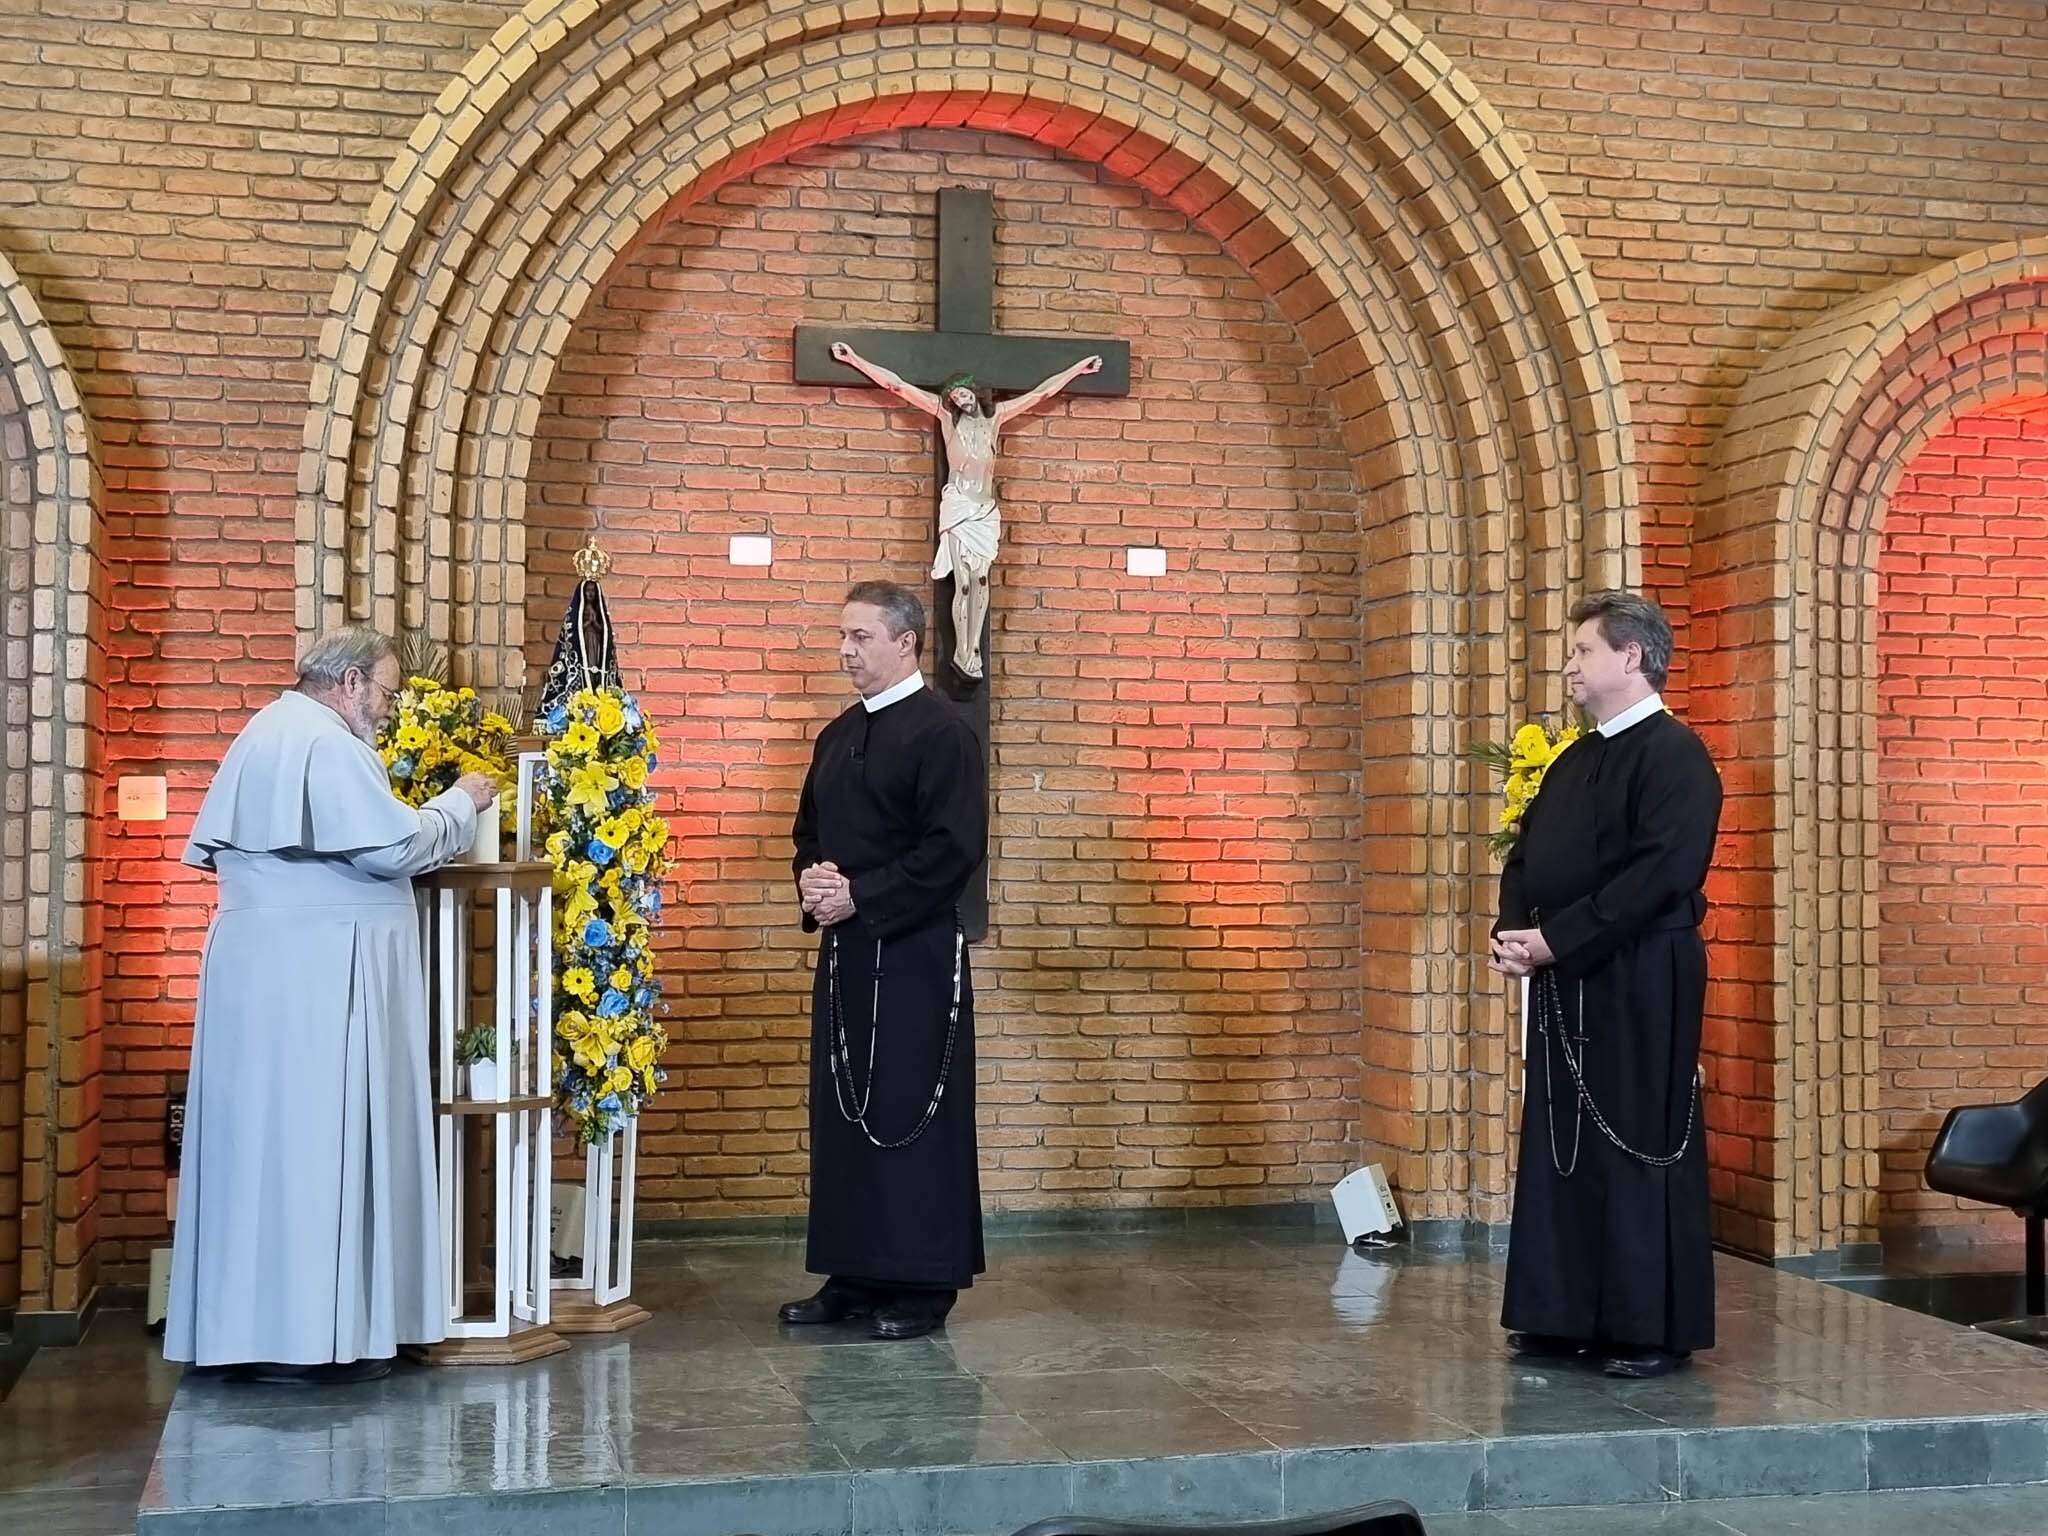 Pe. Antonio Maria recebe os Missionários Redentoristas, padres Camilo Júnior e Eduardo Catalfo para rezar o terço.